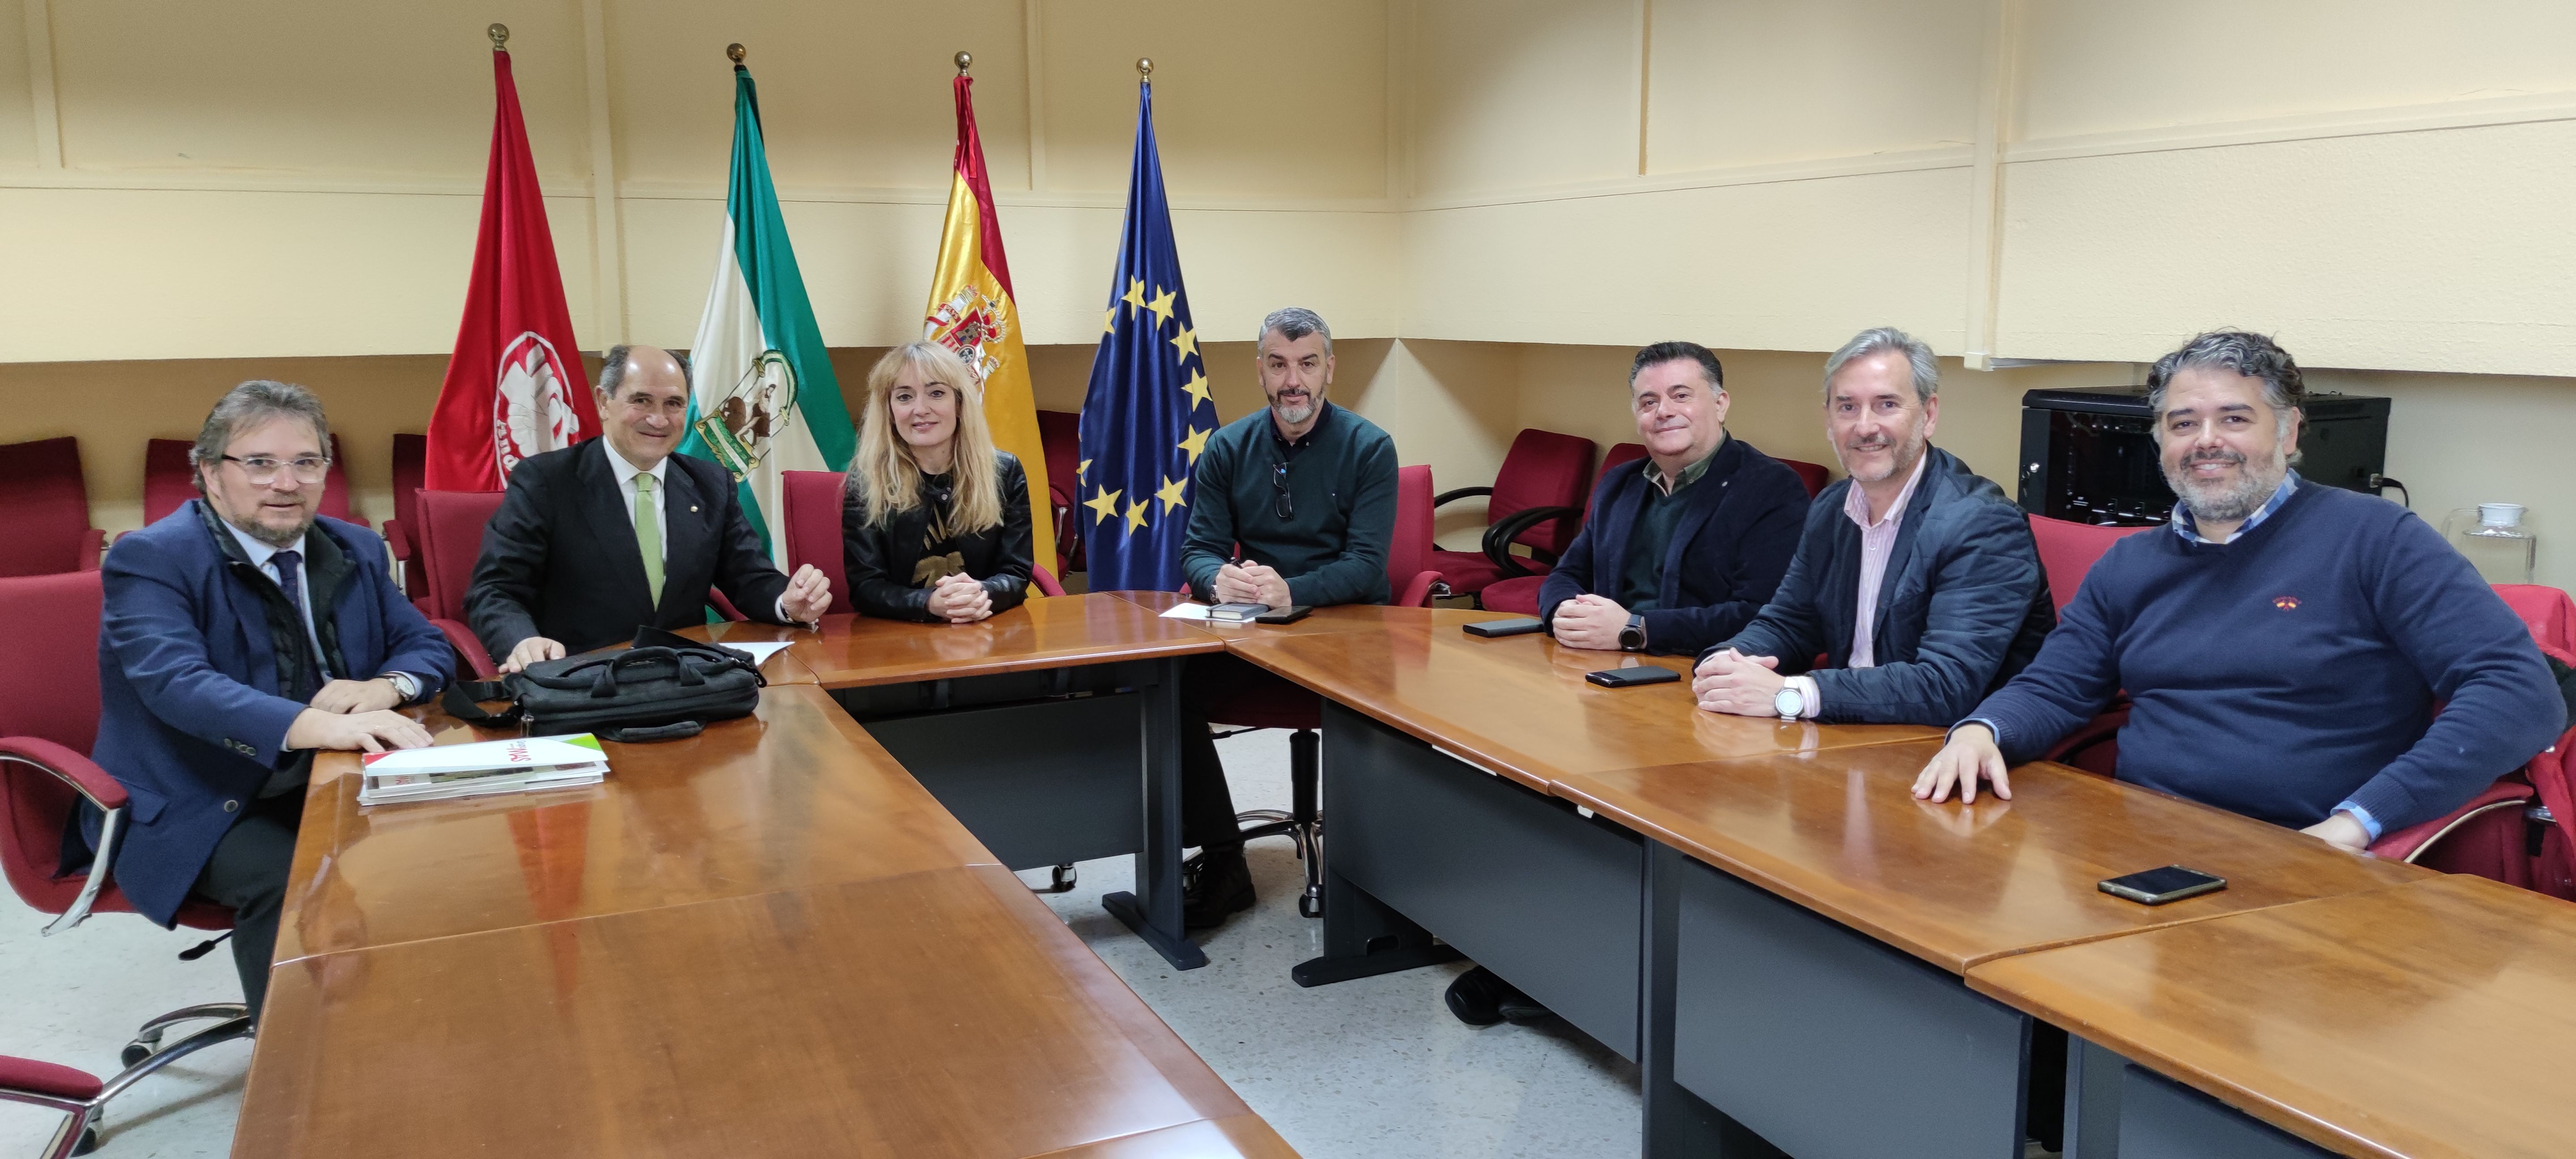 La secretaria general de UGT Andalucía, Carmen Castilla, ha recibido hoy, en la sede del sindicato, al presidente y al director General del Grupo MAS, Vicente y Jerónimo Martín